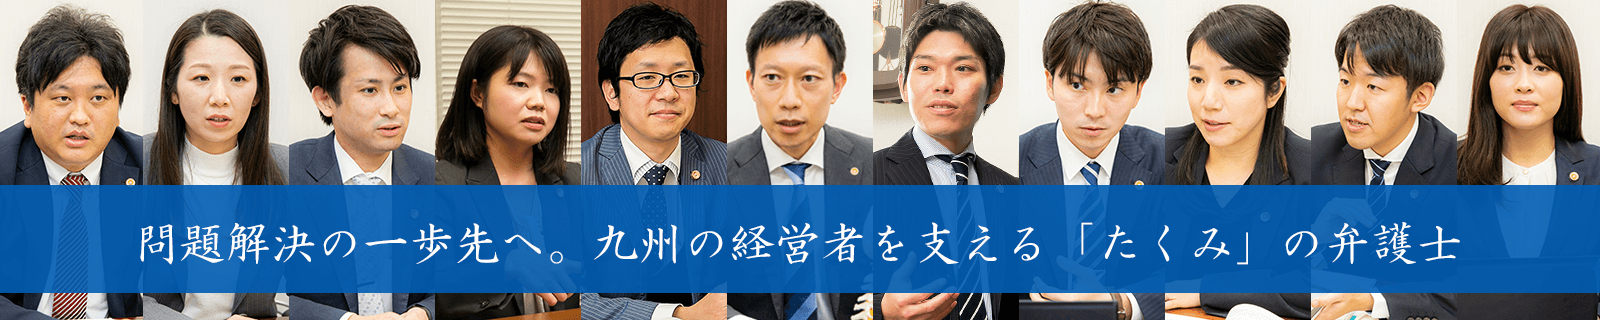 問題解決の一歩先へ。熊本の経営者を支える「たくみ」の弁護士